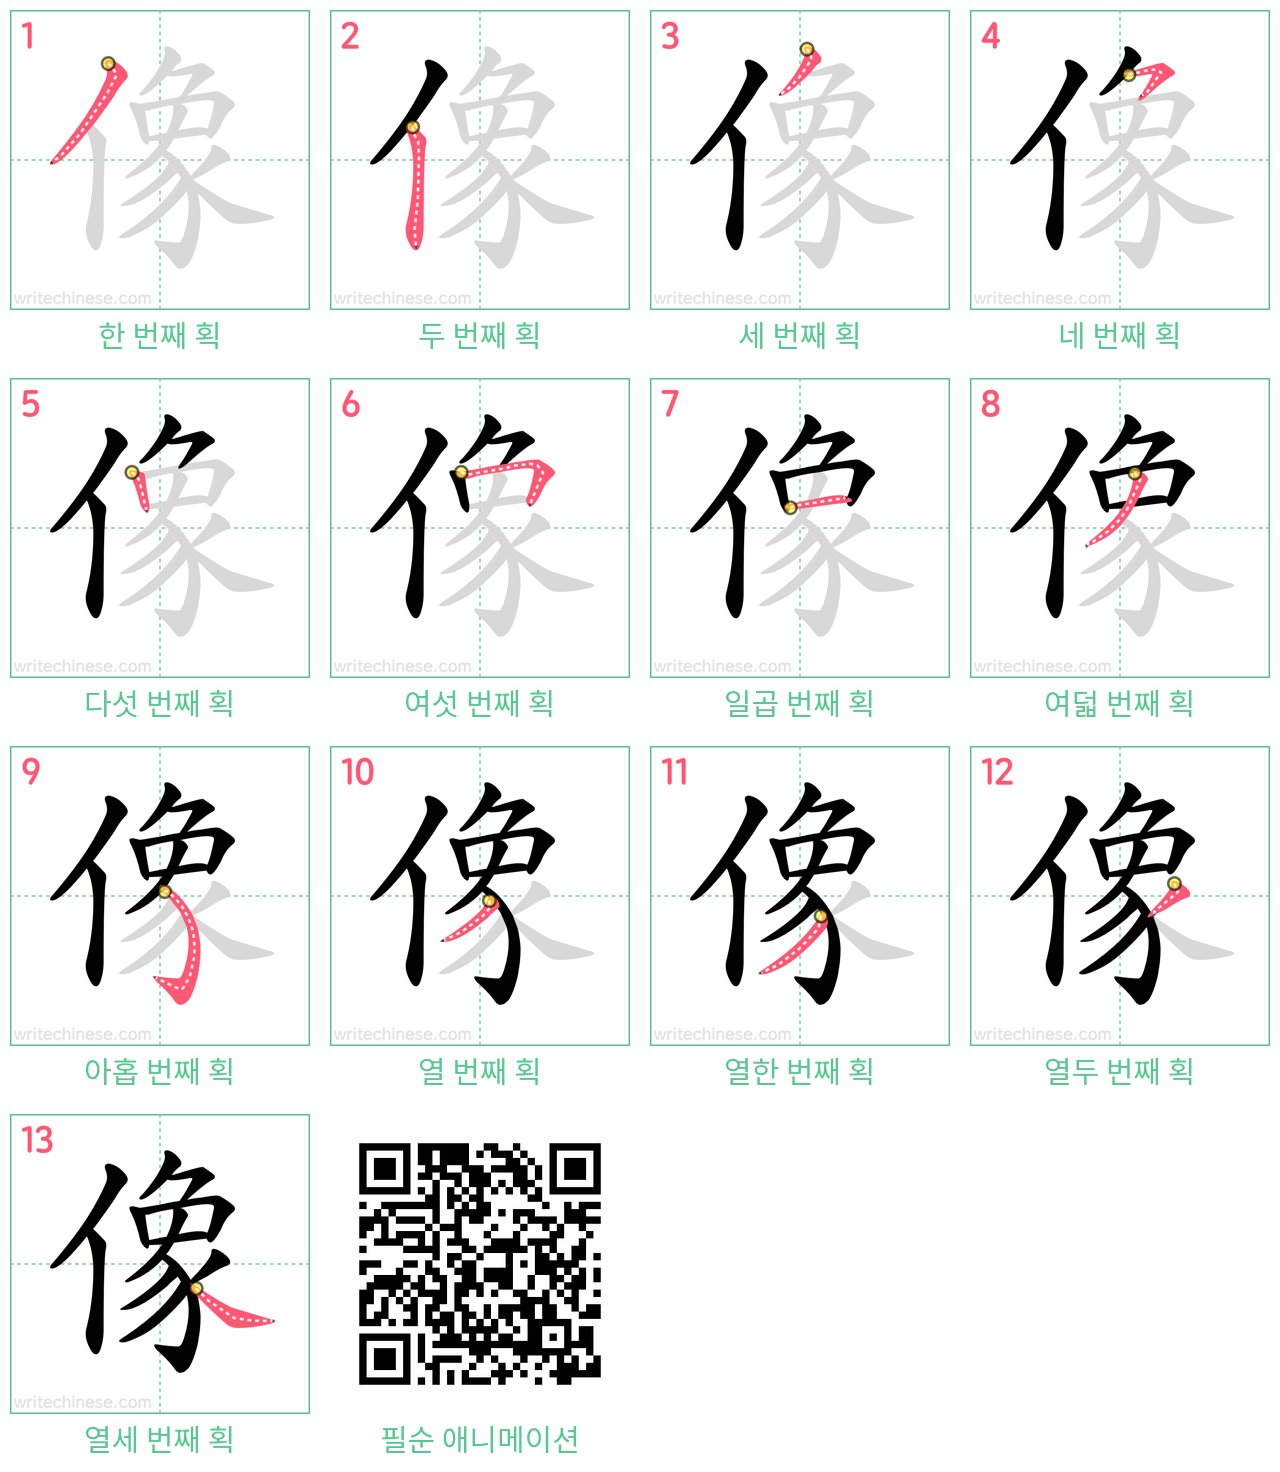 像 step-by-step stroke order diagrams